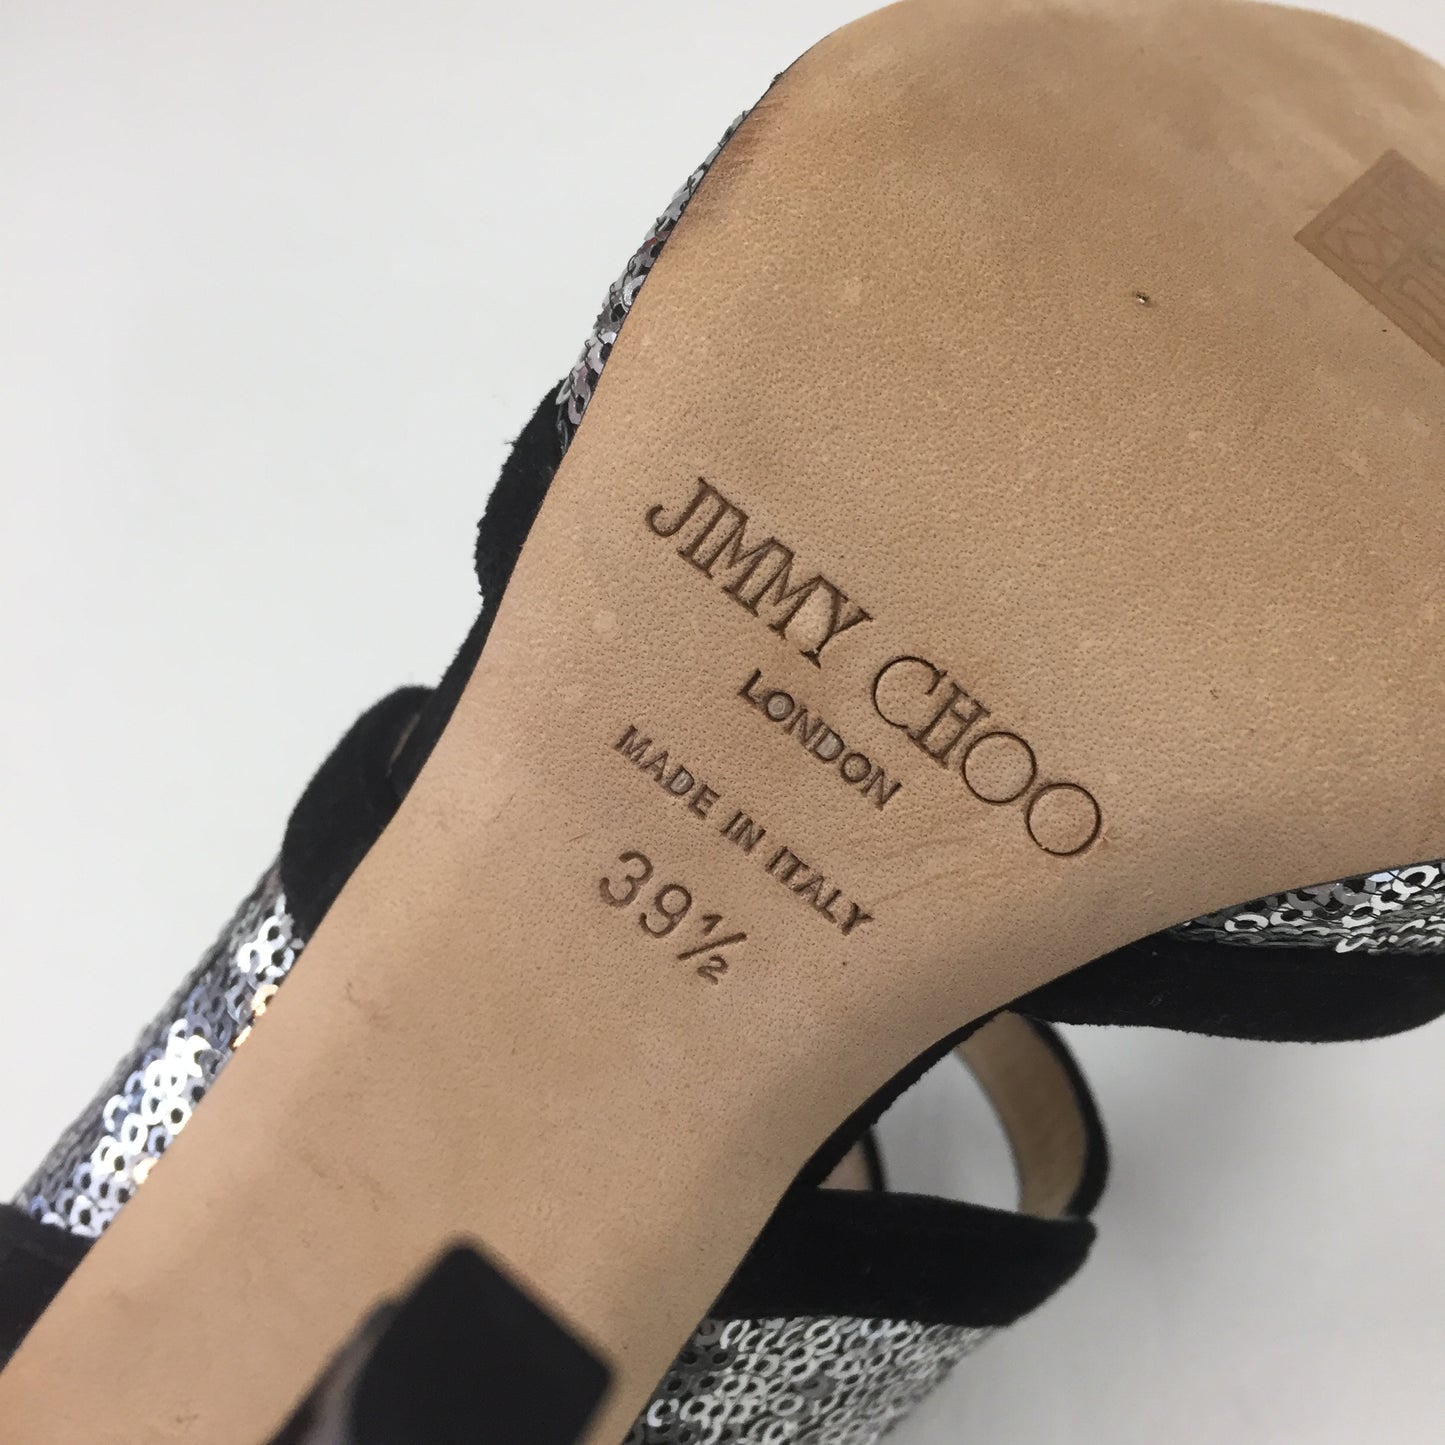 Authentic Jimmy Choo Black/Sequin Pumps Women's Size 39.5